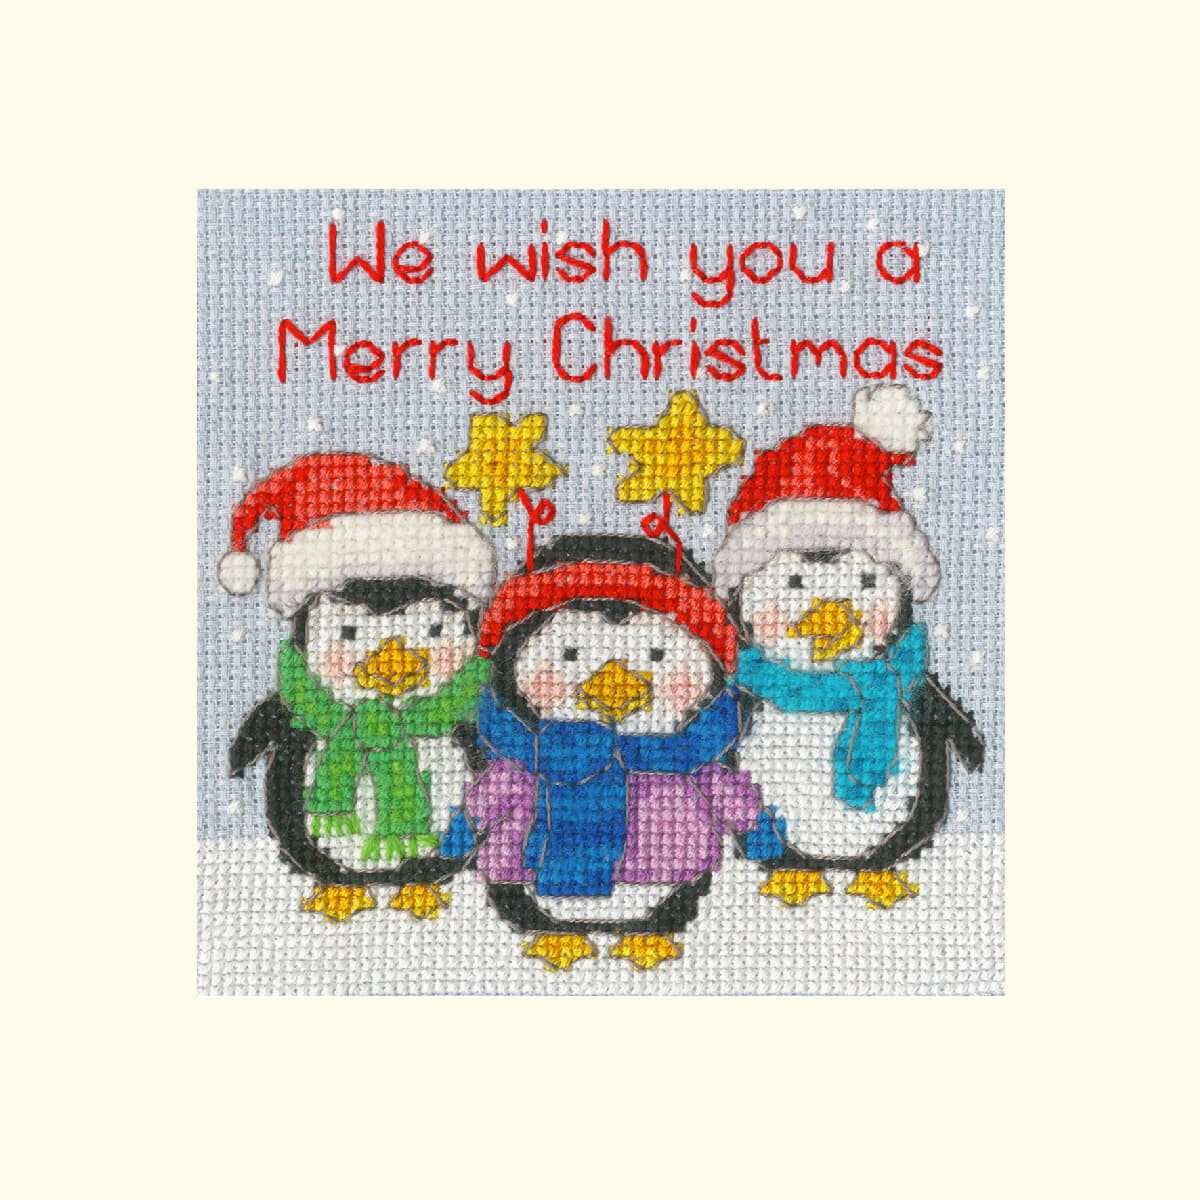 Stickbild von drei Pinguinen, die im Schnee stehen und...